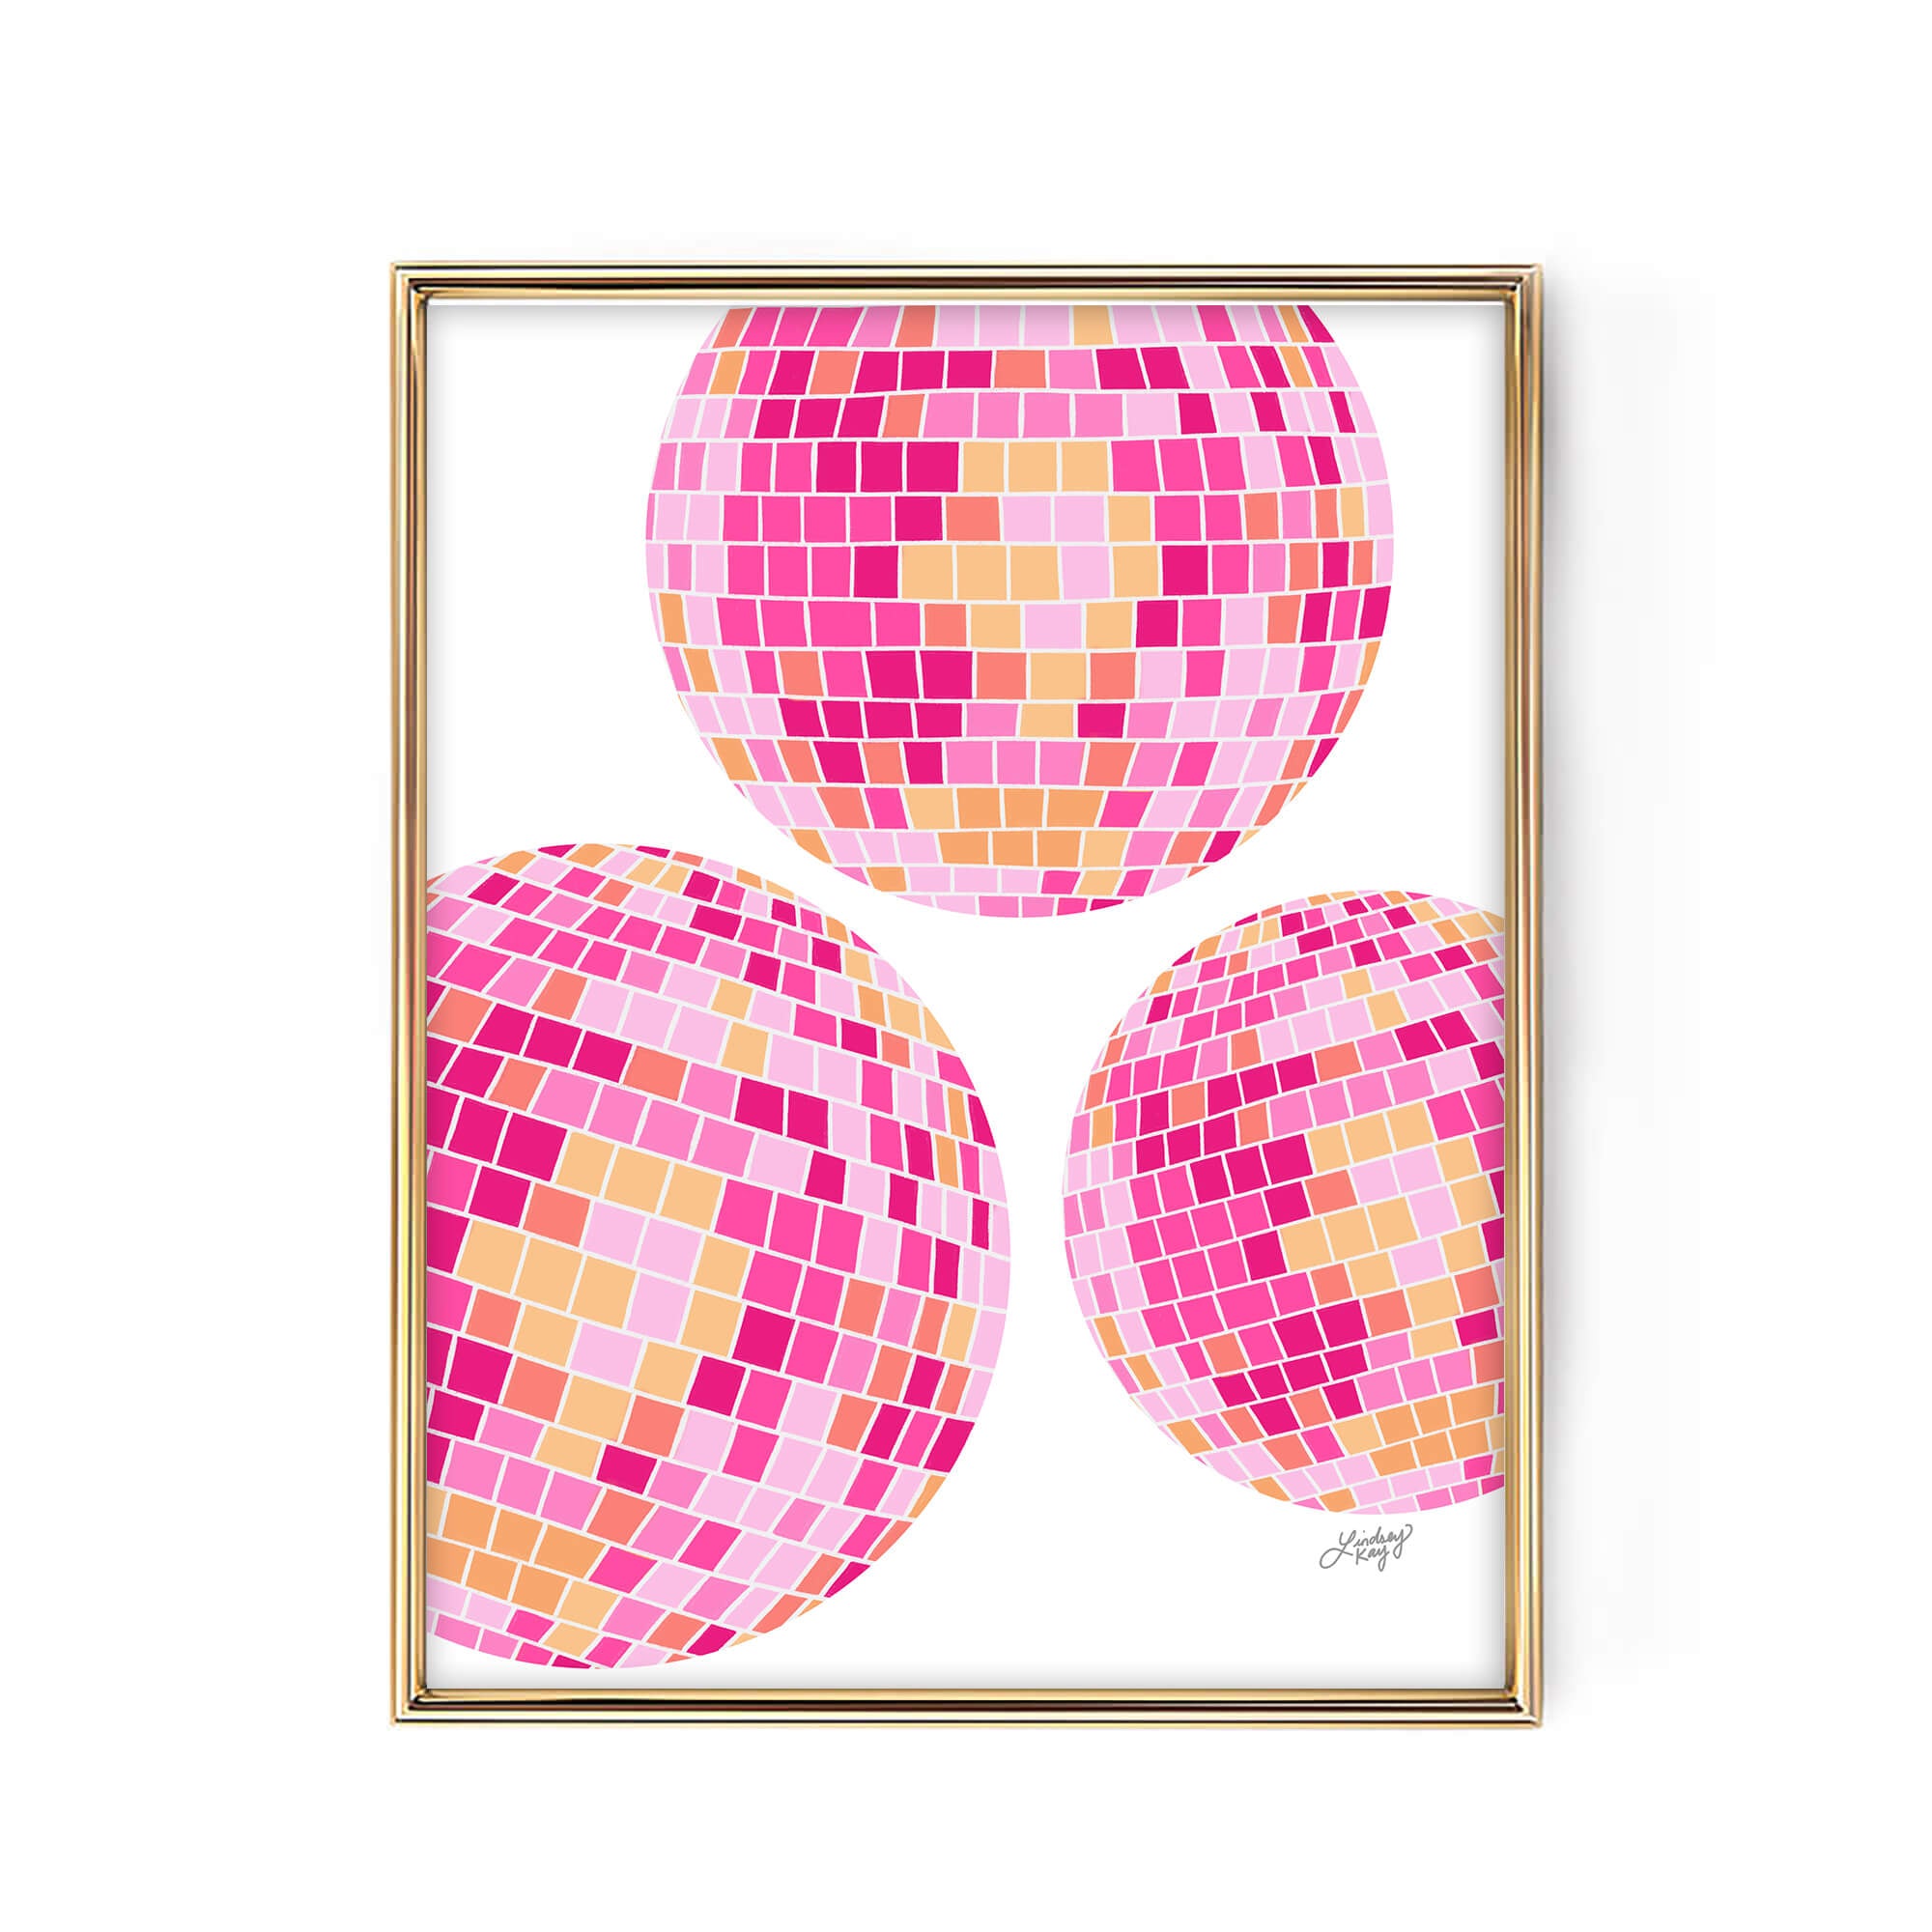 Ilustración de bolas de discoteca (paleta rosa/naranja) - Impresión de arte